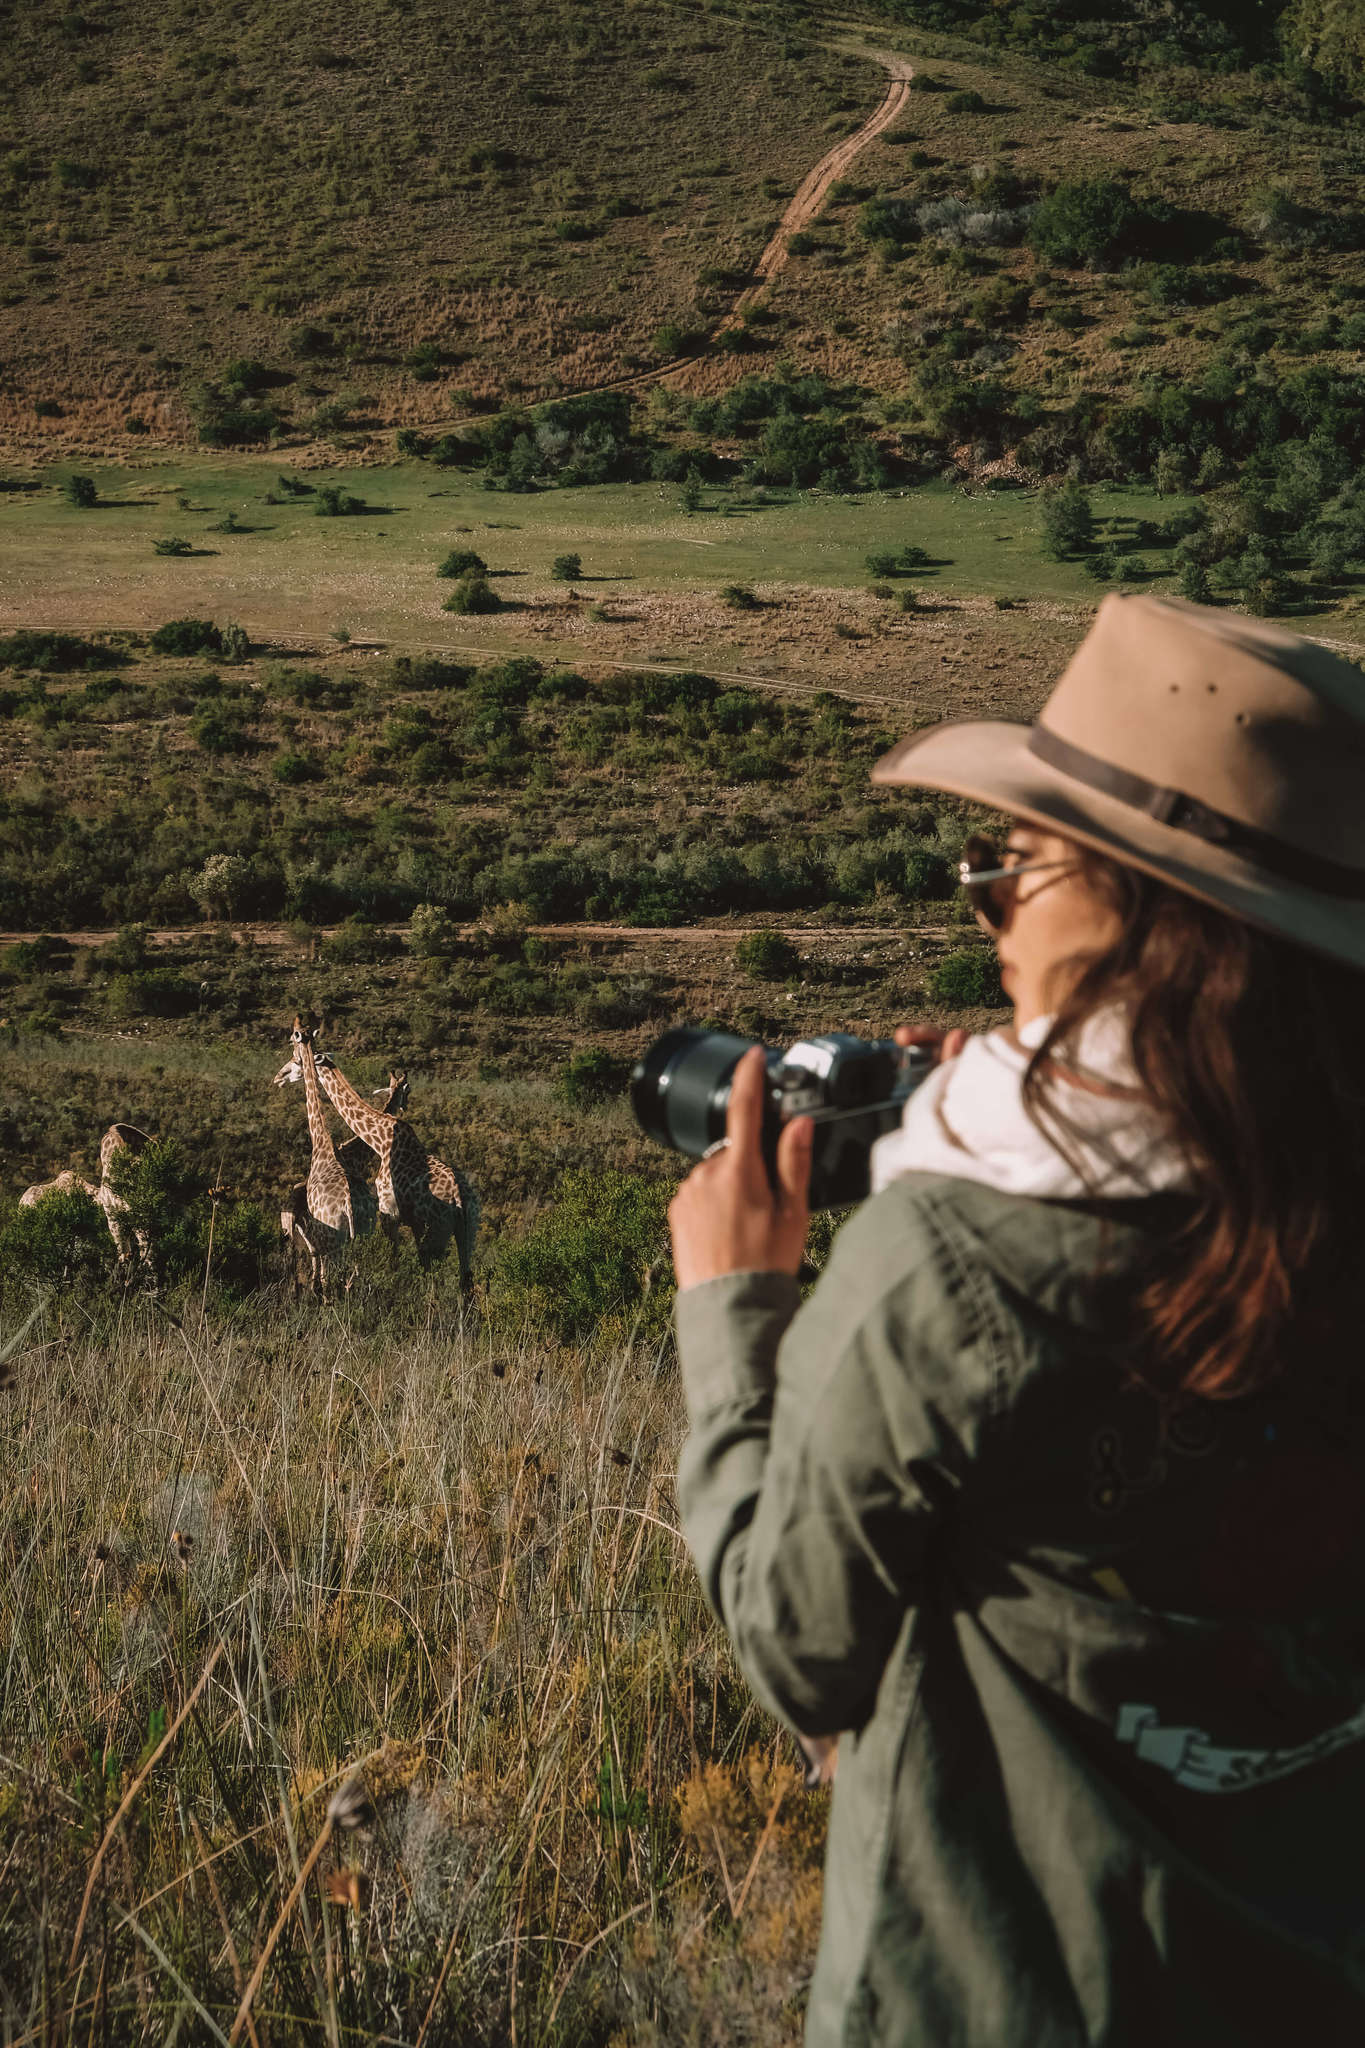 Shooting safari with Fujifilm